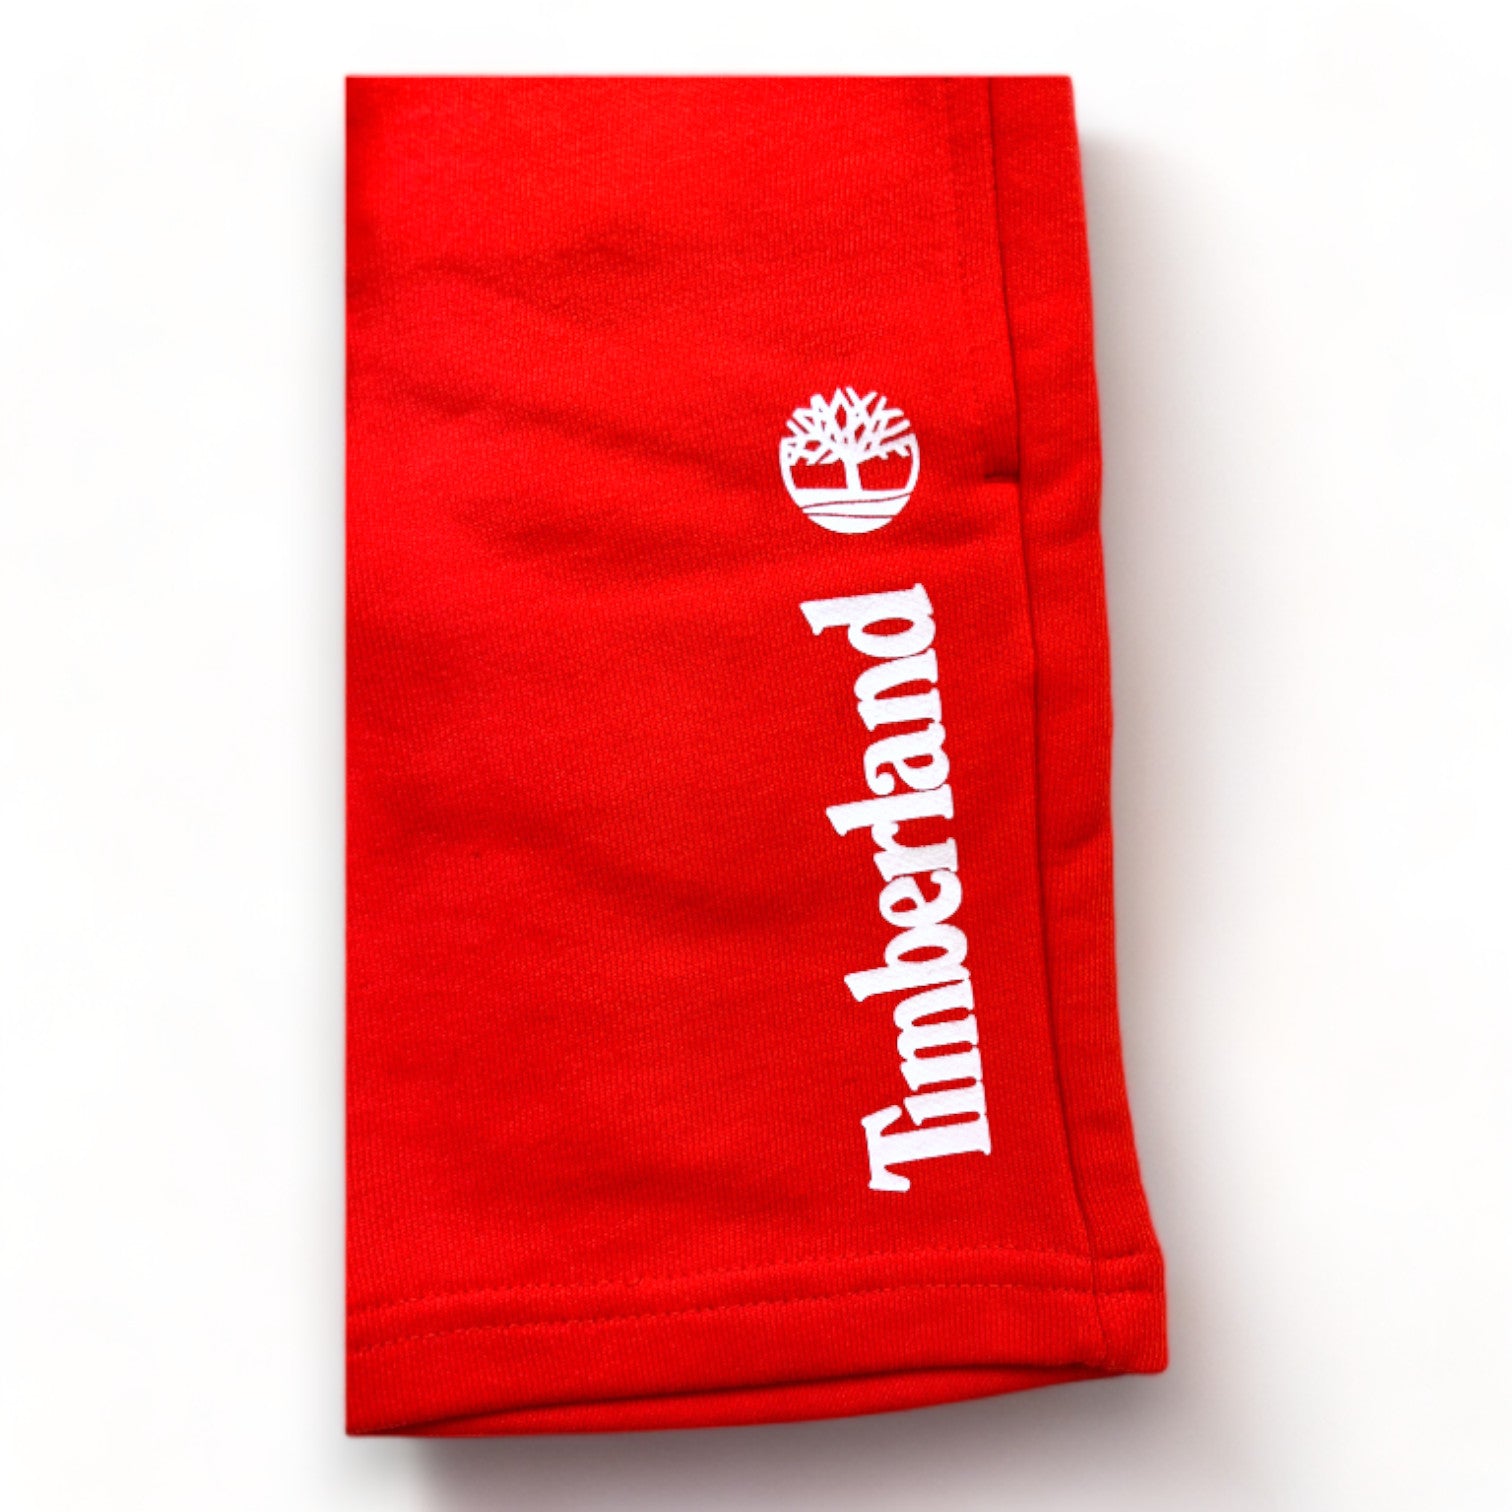 TIMBERLAND - Short rouge imprimé "Timberland" neuf - 4 ans